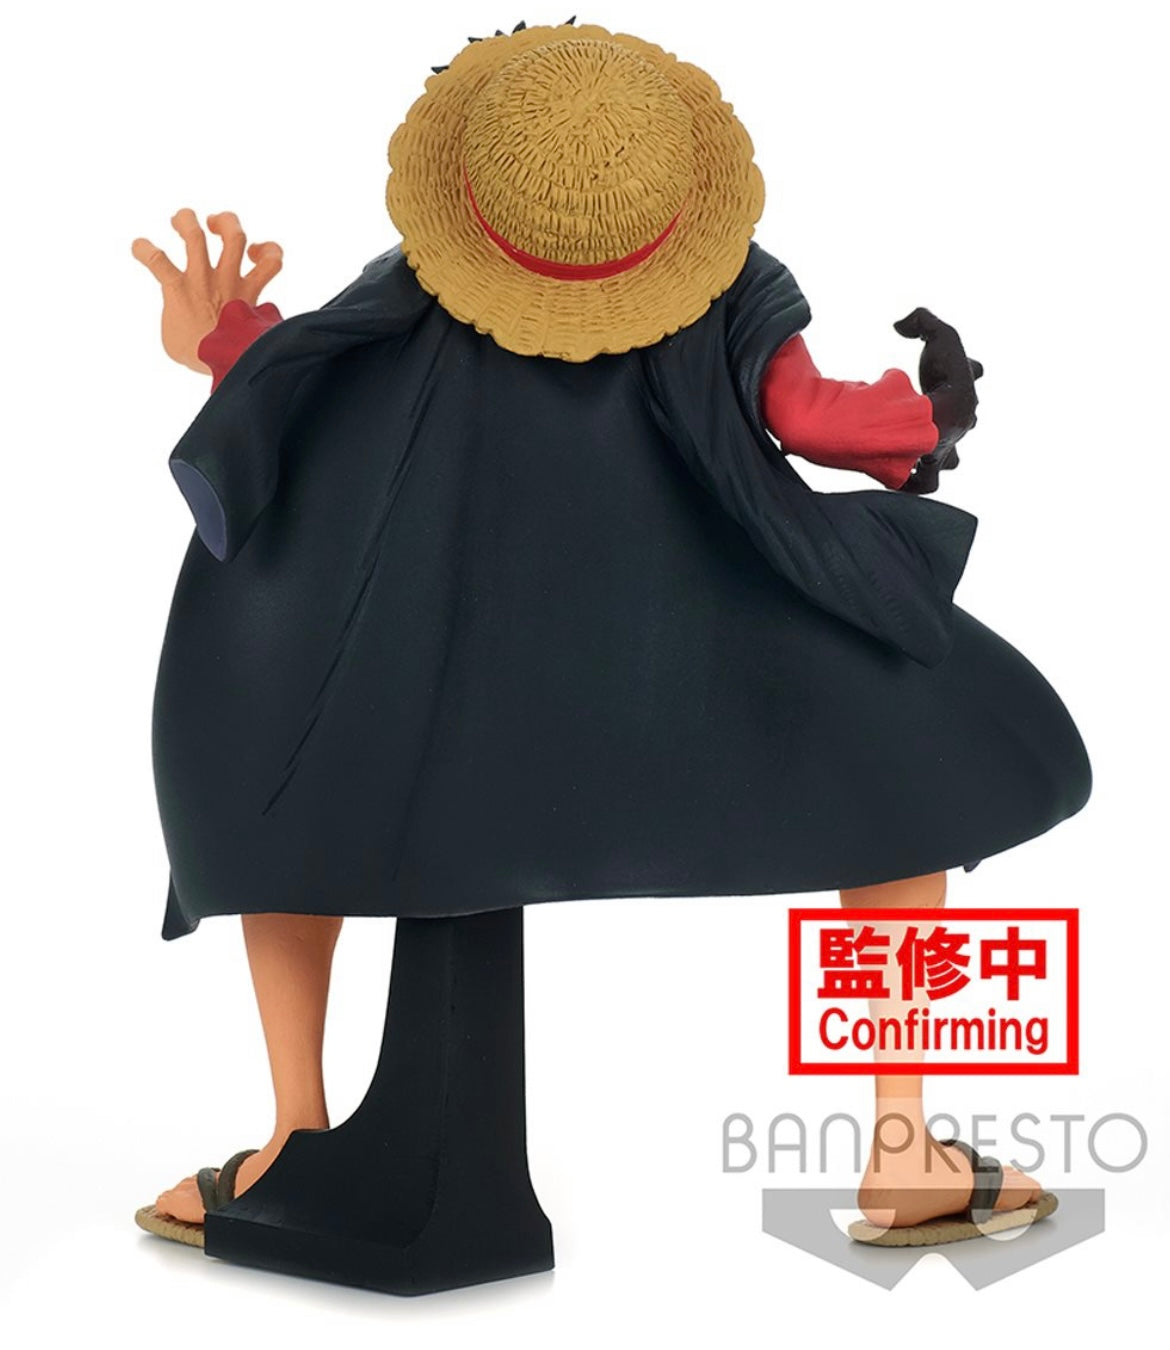 Banpresto One Piece Figure King of Artist MONKEY.D.LUFFY Wa no